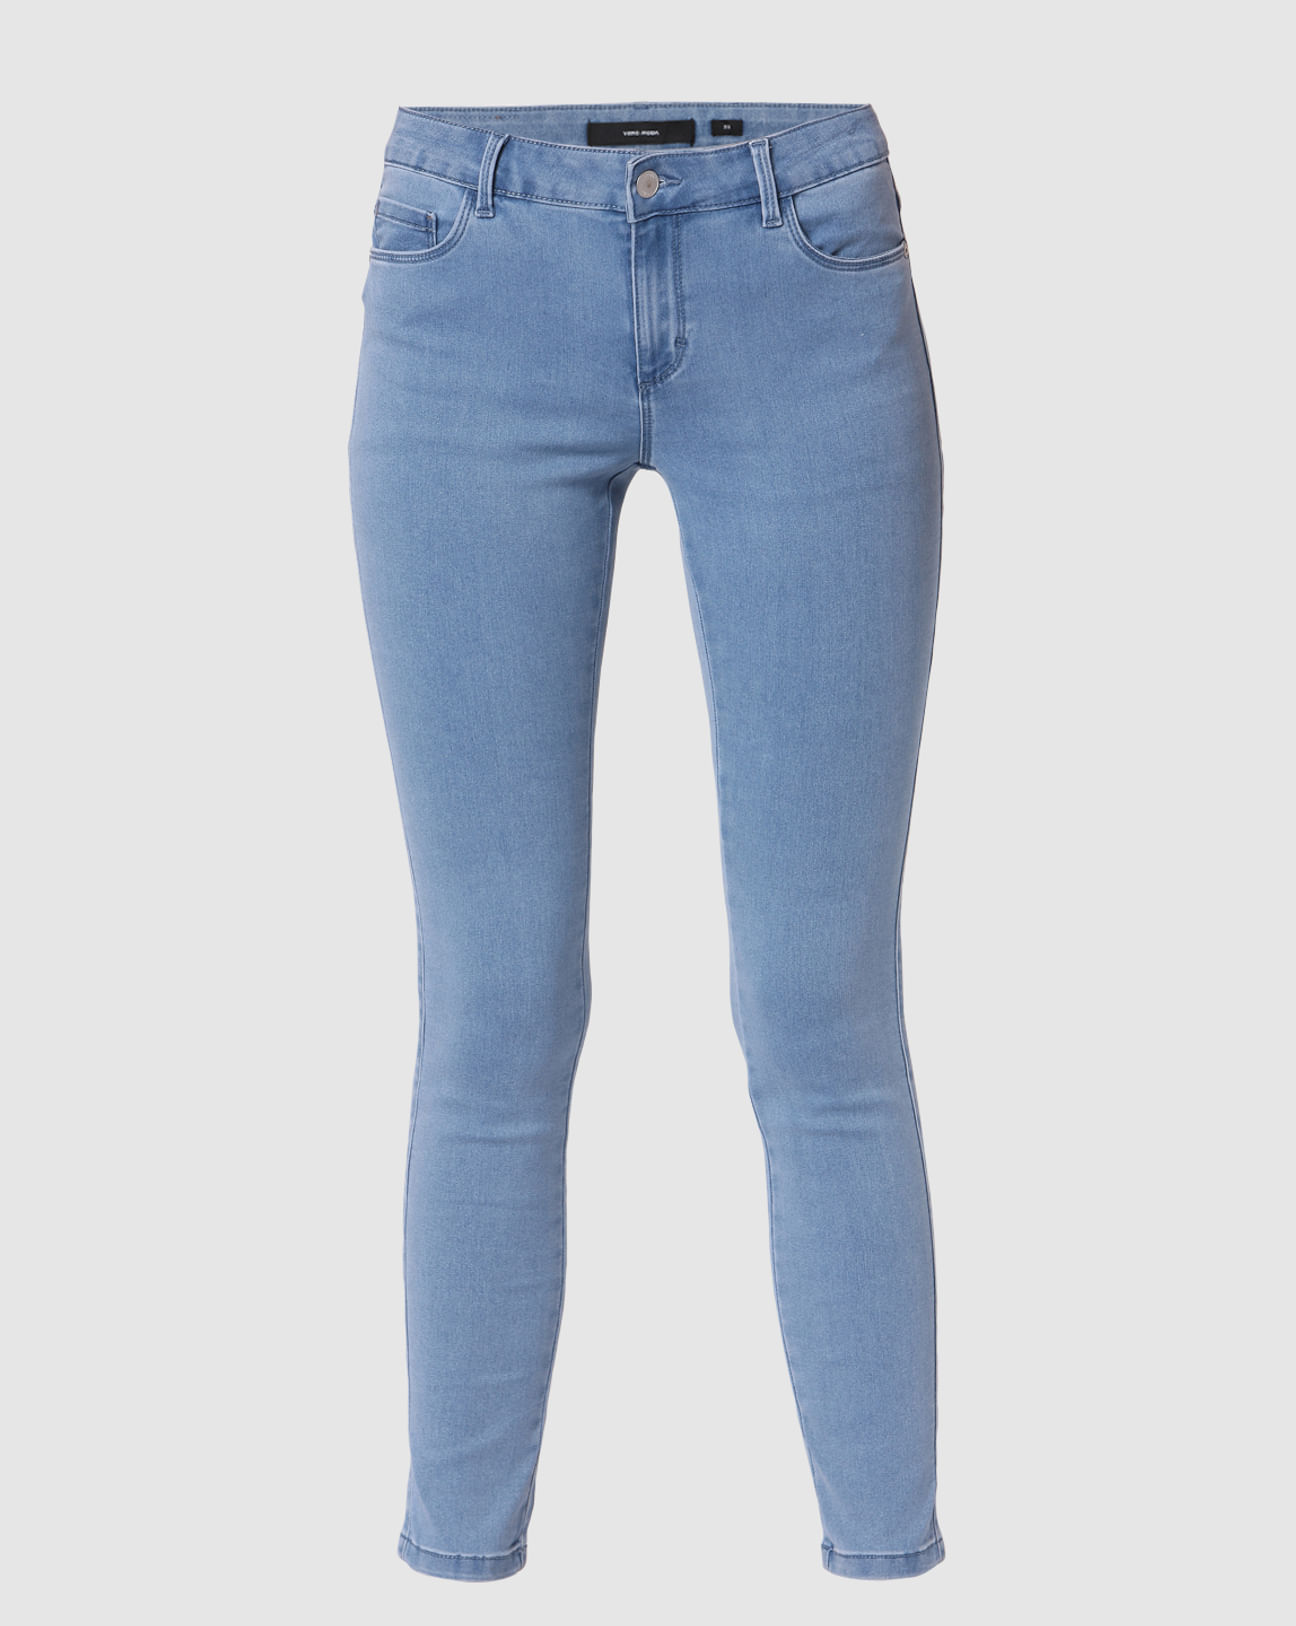 New Women's HUE Original Jeans Leggings Back Pocket Full Length Pants Red  Sz XS